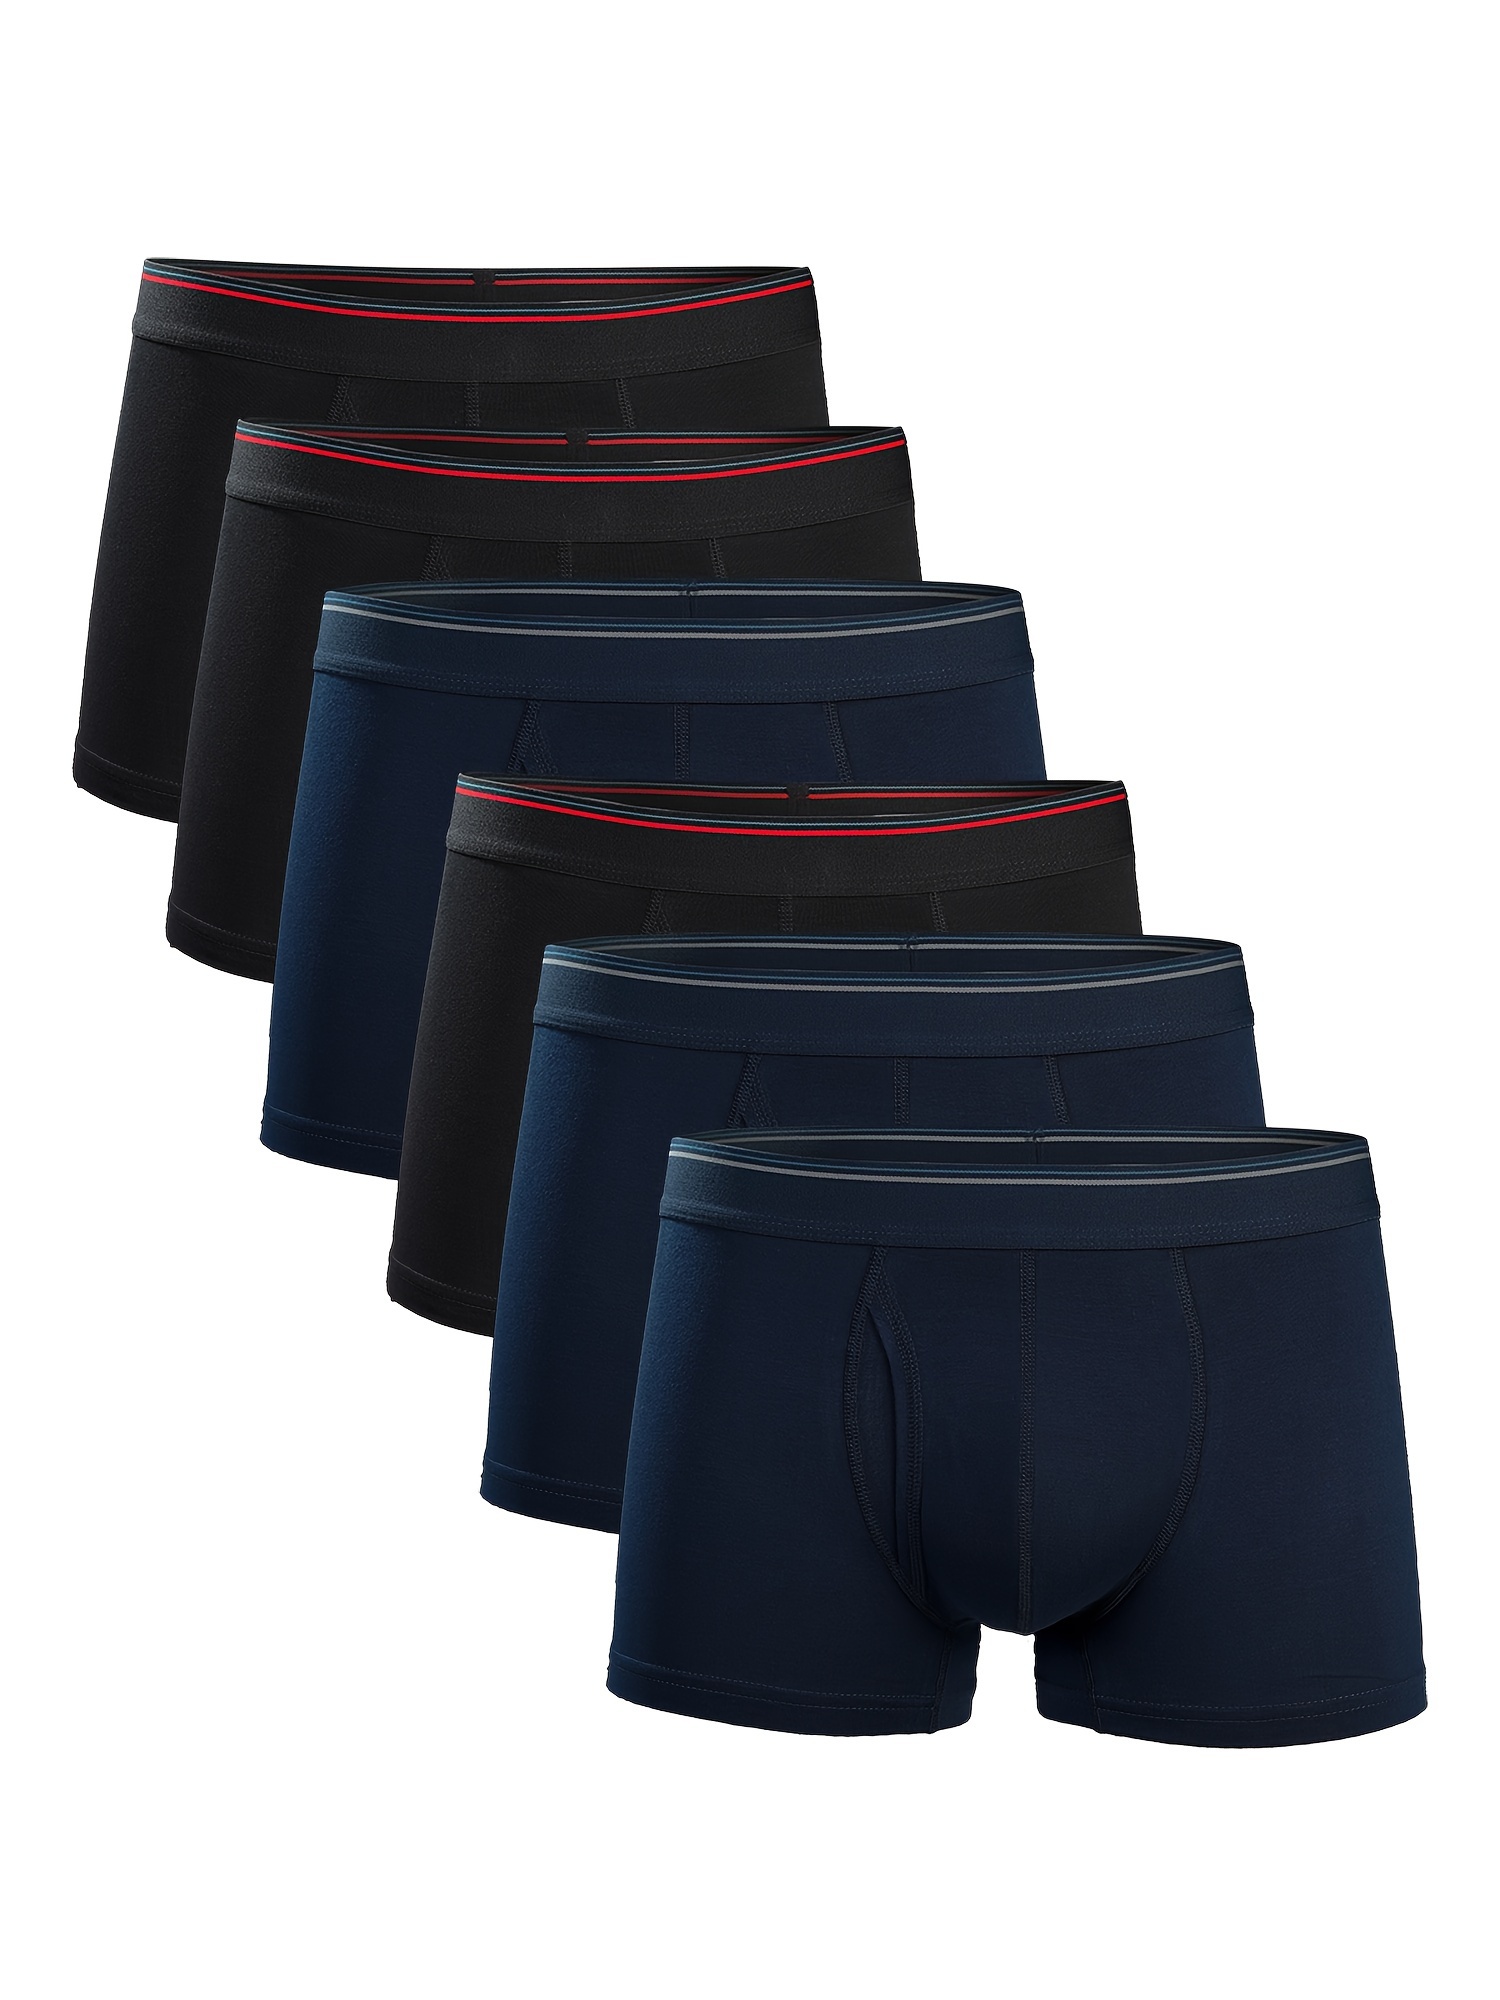 Men's Underwear Comfortable Soft Skin friendly U pouch Boxer